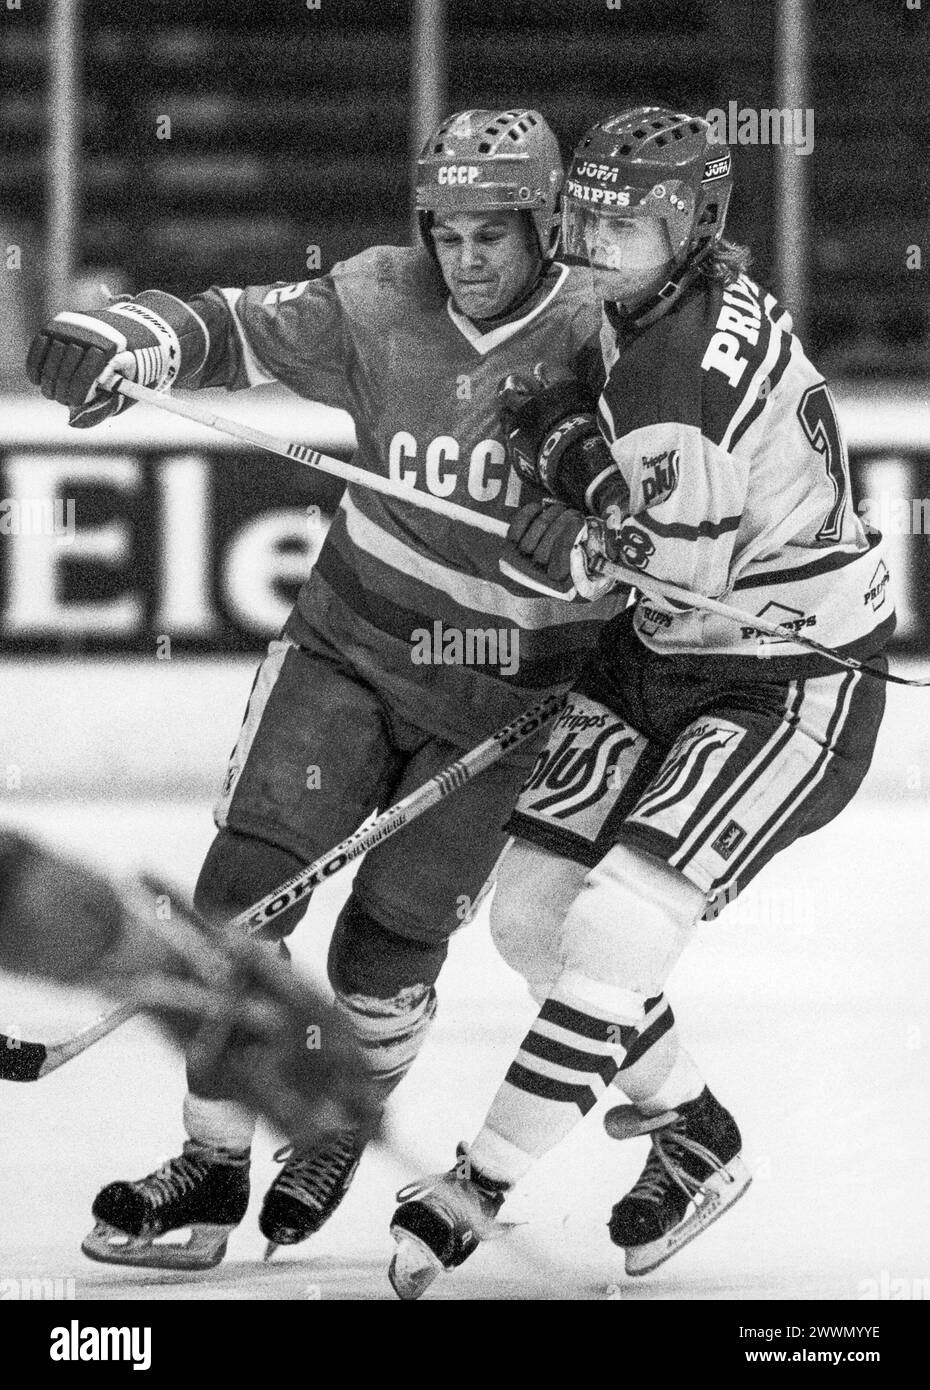 MICHAEL HJÄLM hockey sur glace Suède contre Soviet à Stockholm Sergei Nemchinov dans les matchs nationaux Banque D'Images